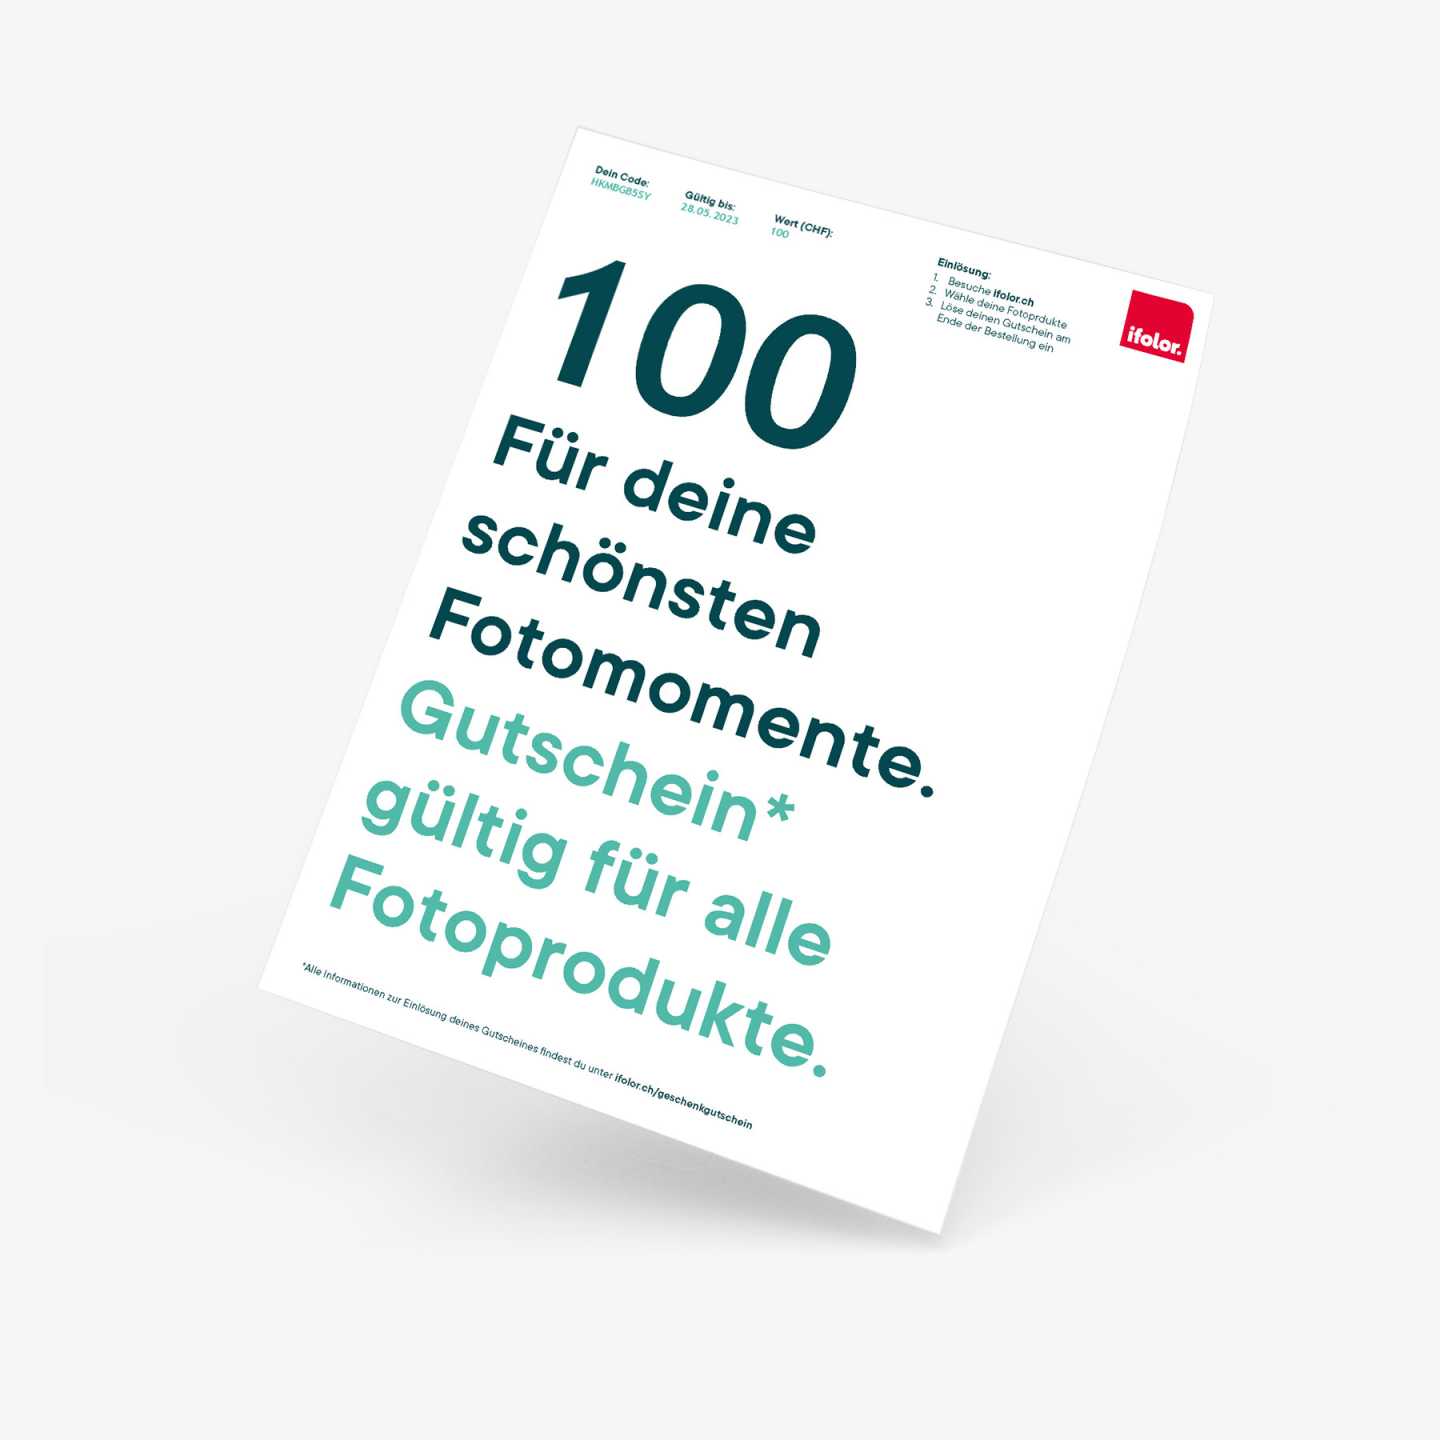 100-pdf.jpg